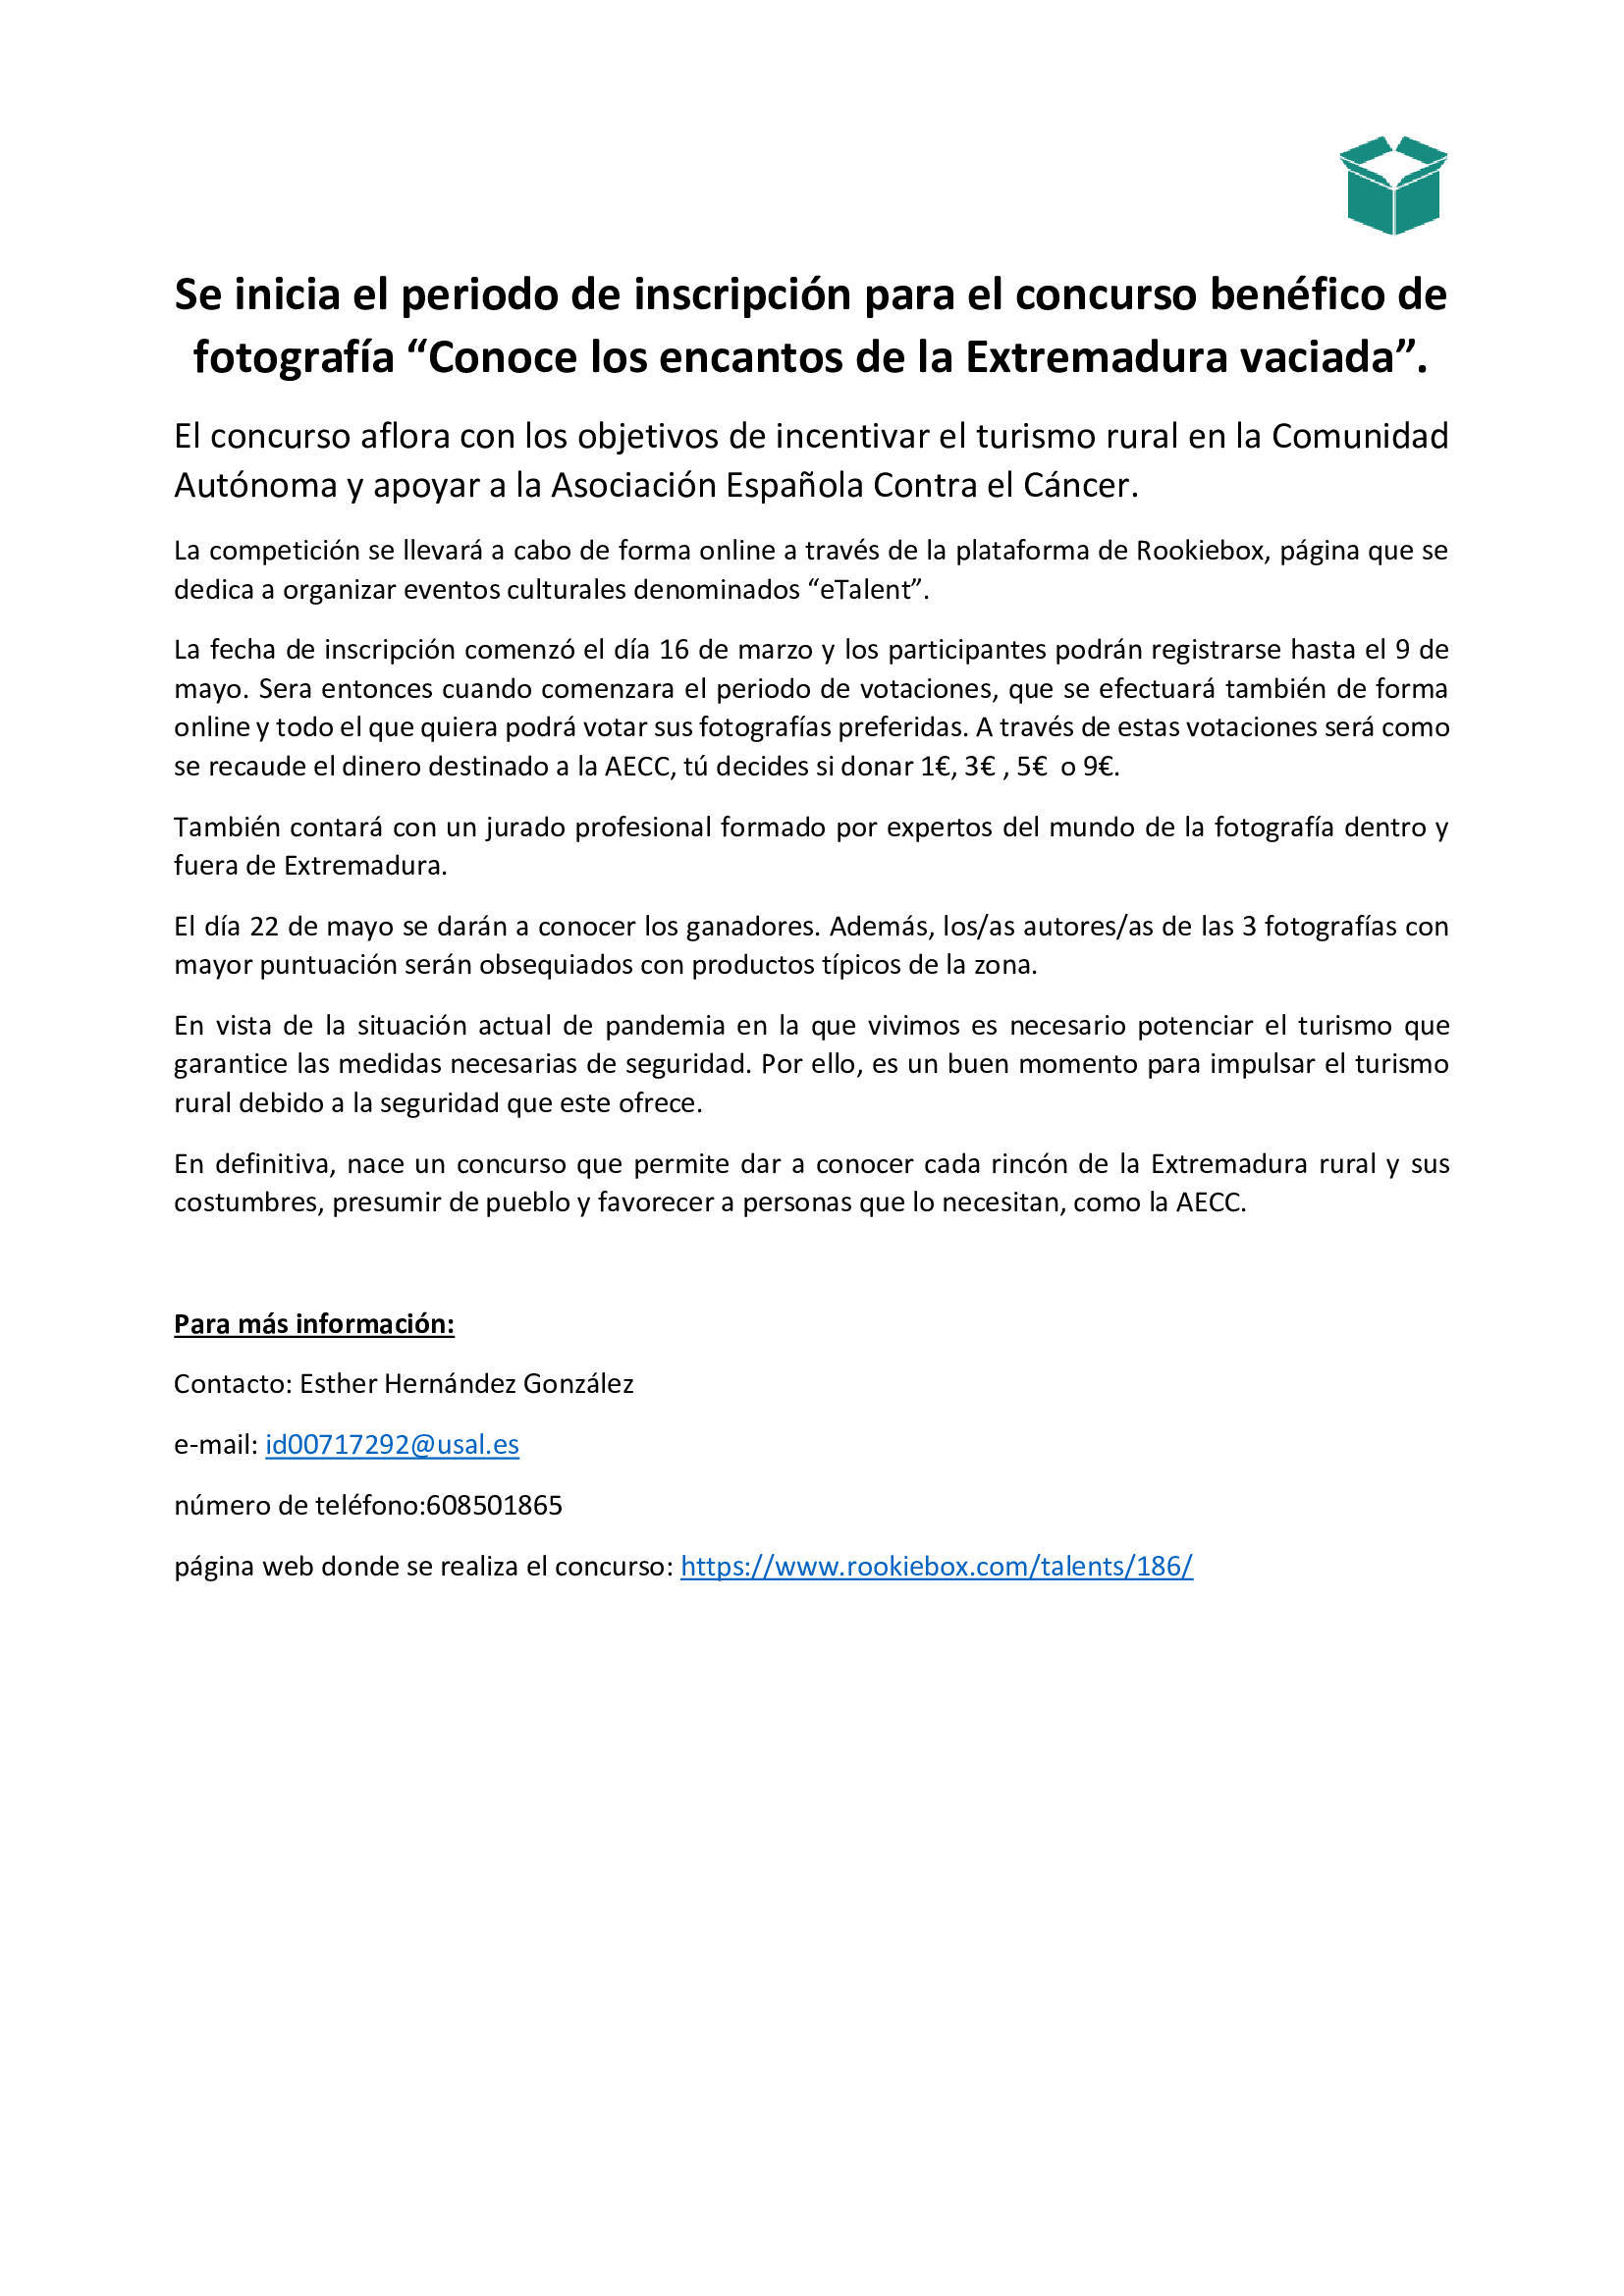 Se inicia el periodo de inscripción para el concurso benéfico de fotografía Conoce los encantos de la Extremadura vaciada (2021) 2